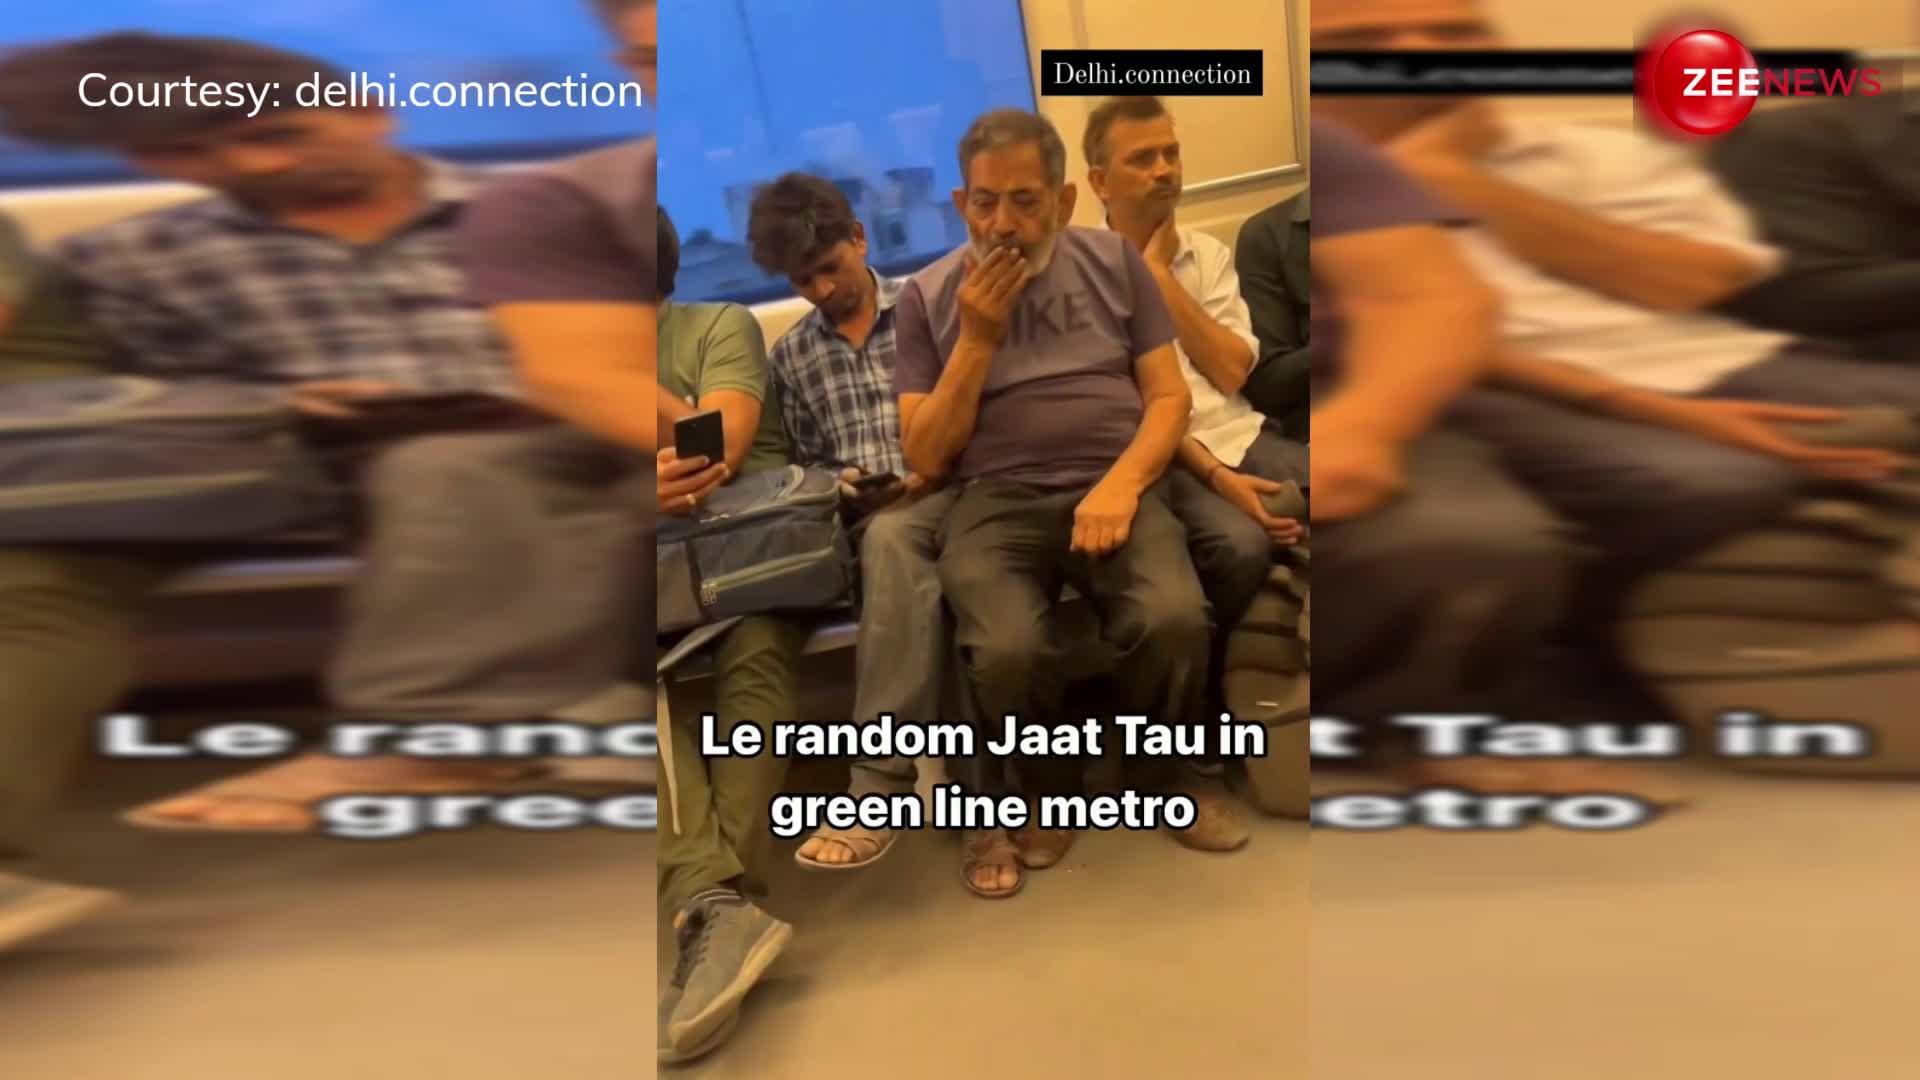 ये नहीं सुधरेंगे! दिल्ली मेट्रो में लोगों के बीच बीड़ी पीता नजर आया शख्स, वीडियो देख लोगों ने पकड़ लिया अपना माथा